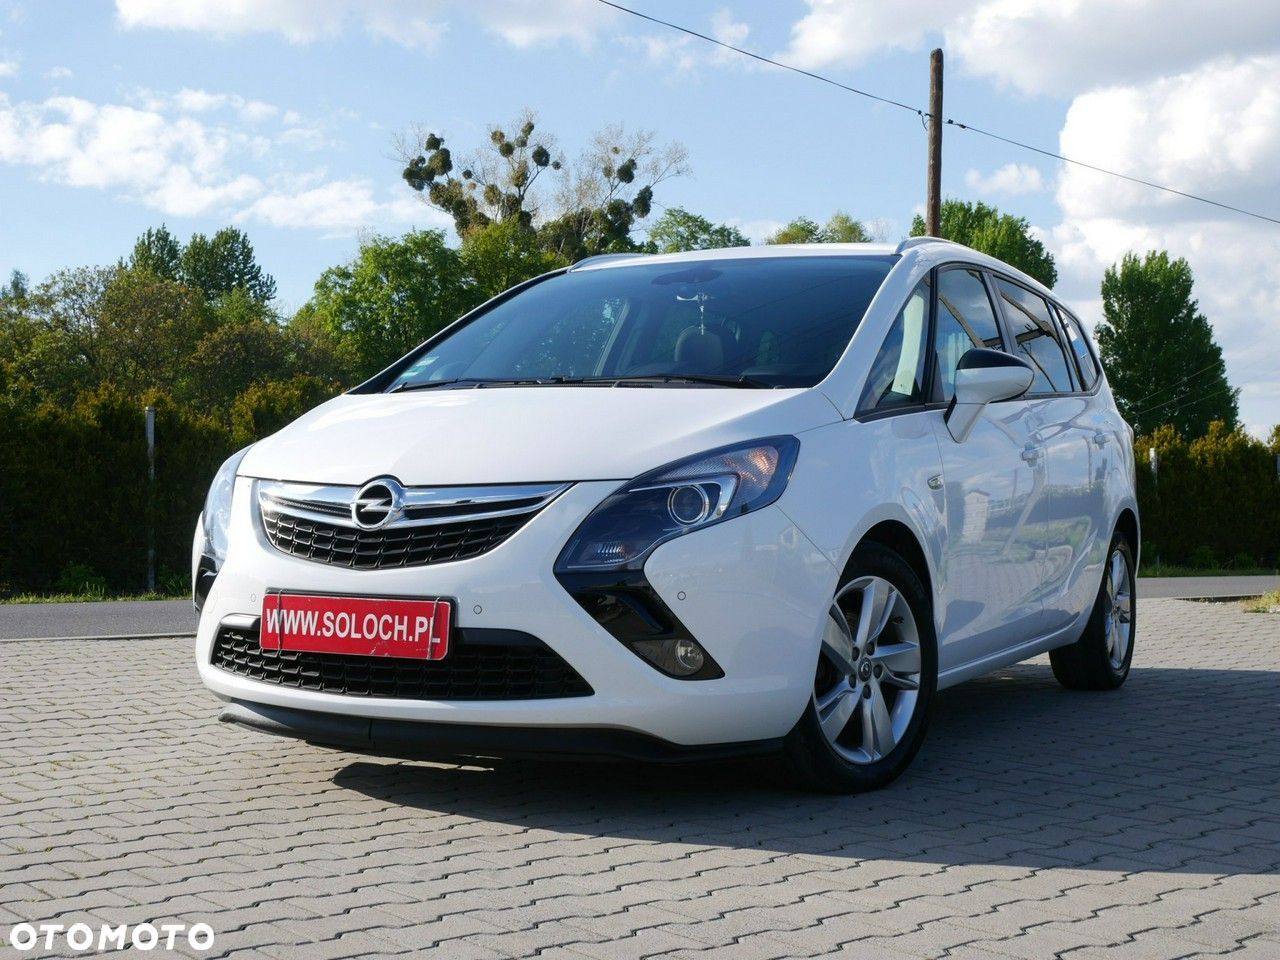 Opel Zafira 1.6 CDTI Enjoy - 1